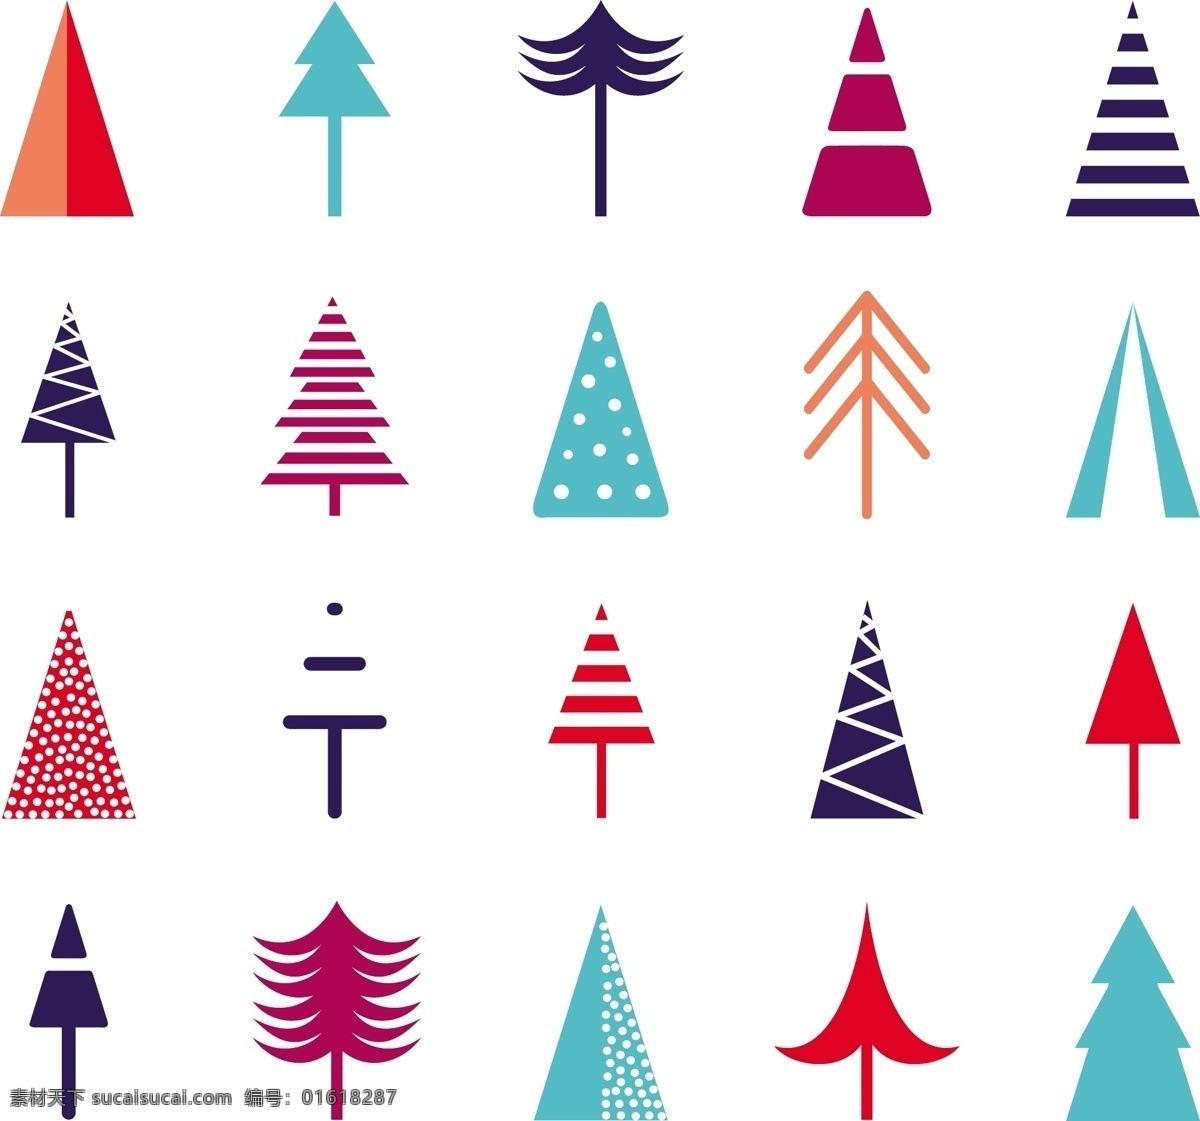 各种 圣诞树 精美 圣诞节 矢量 各种圣诞树 可爱 卡通 矢量图 背景 纹理